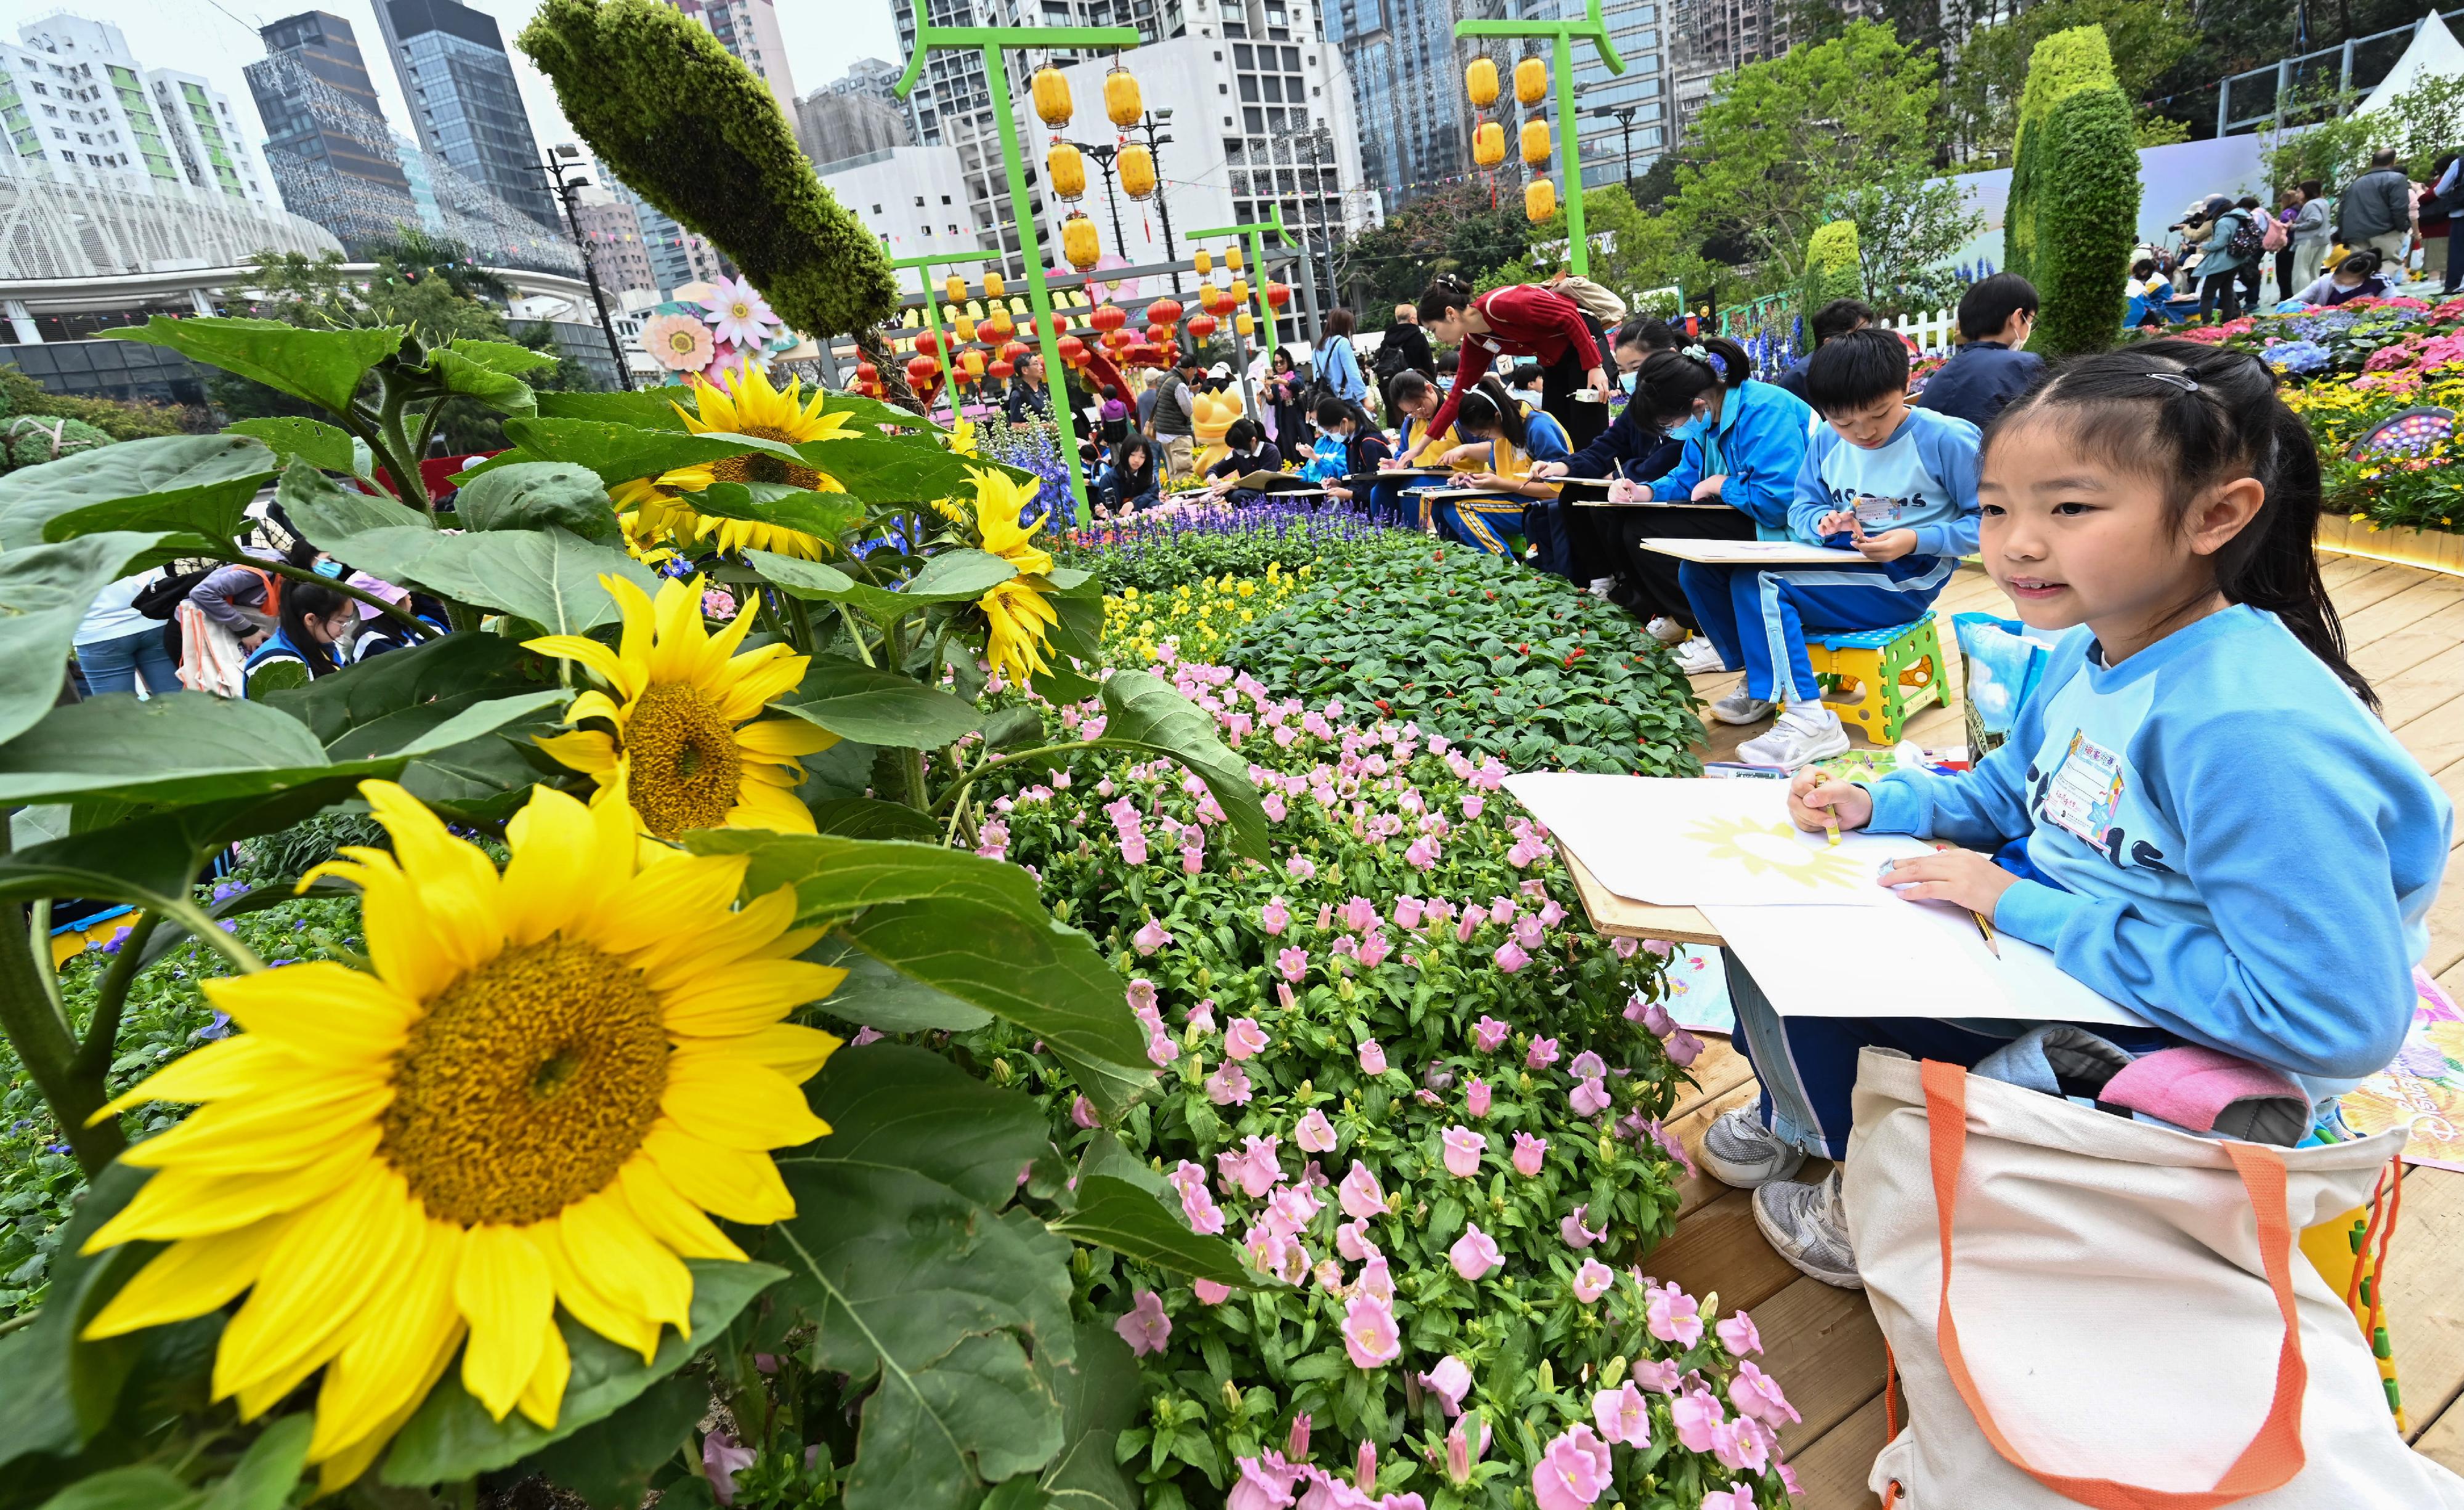 每年一度的賞花盛事香港花卉展覽今日（三月十五日）在維多利亞公園開幕，展出約四十二萬株花卉，包括約四萬株主題花香彩雀。今日舉行的賽馬會學童繪畫比賽吸引約二千二百人參與。